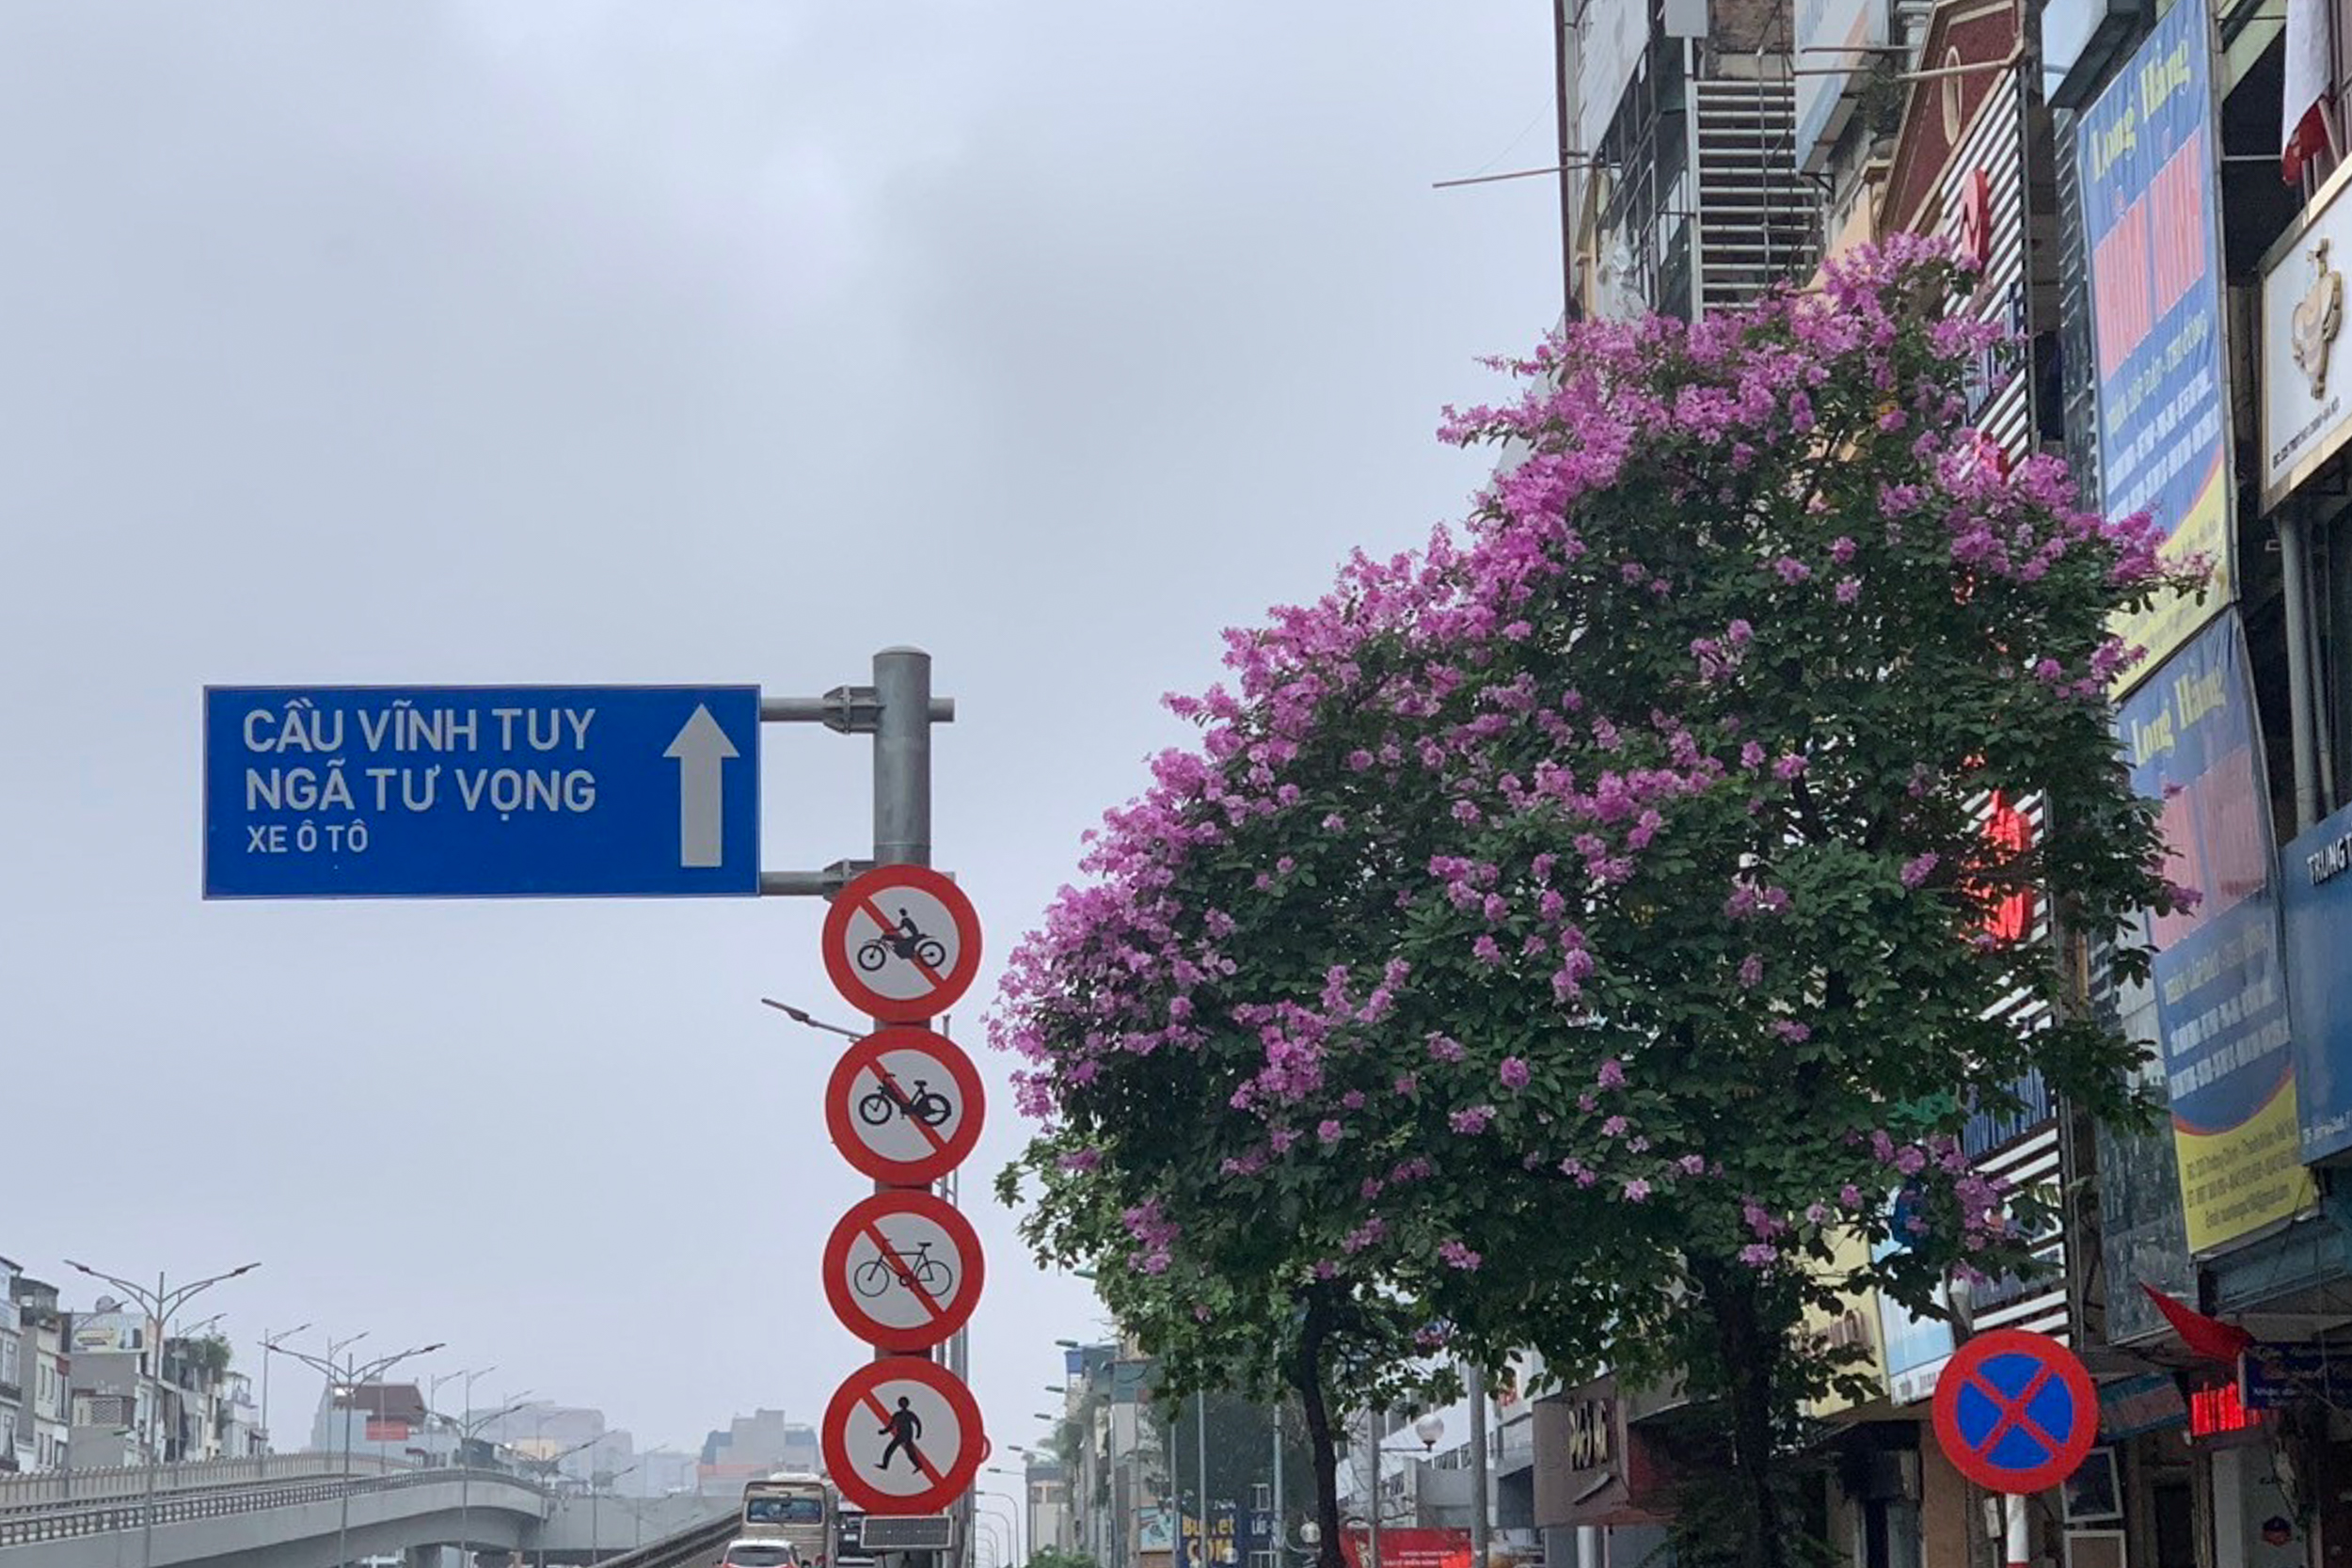 Những cánh hoa tím tô điểm thêm cho phố phường Hà Nội một vẻ đằm thắm, dịu dàng và tràn đầy sức sống. Từ lâu, sắc tím bằng lăng đã trở thành nét đẹp đặc trưng của Thủ đô mỗi khi hè về.